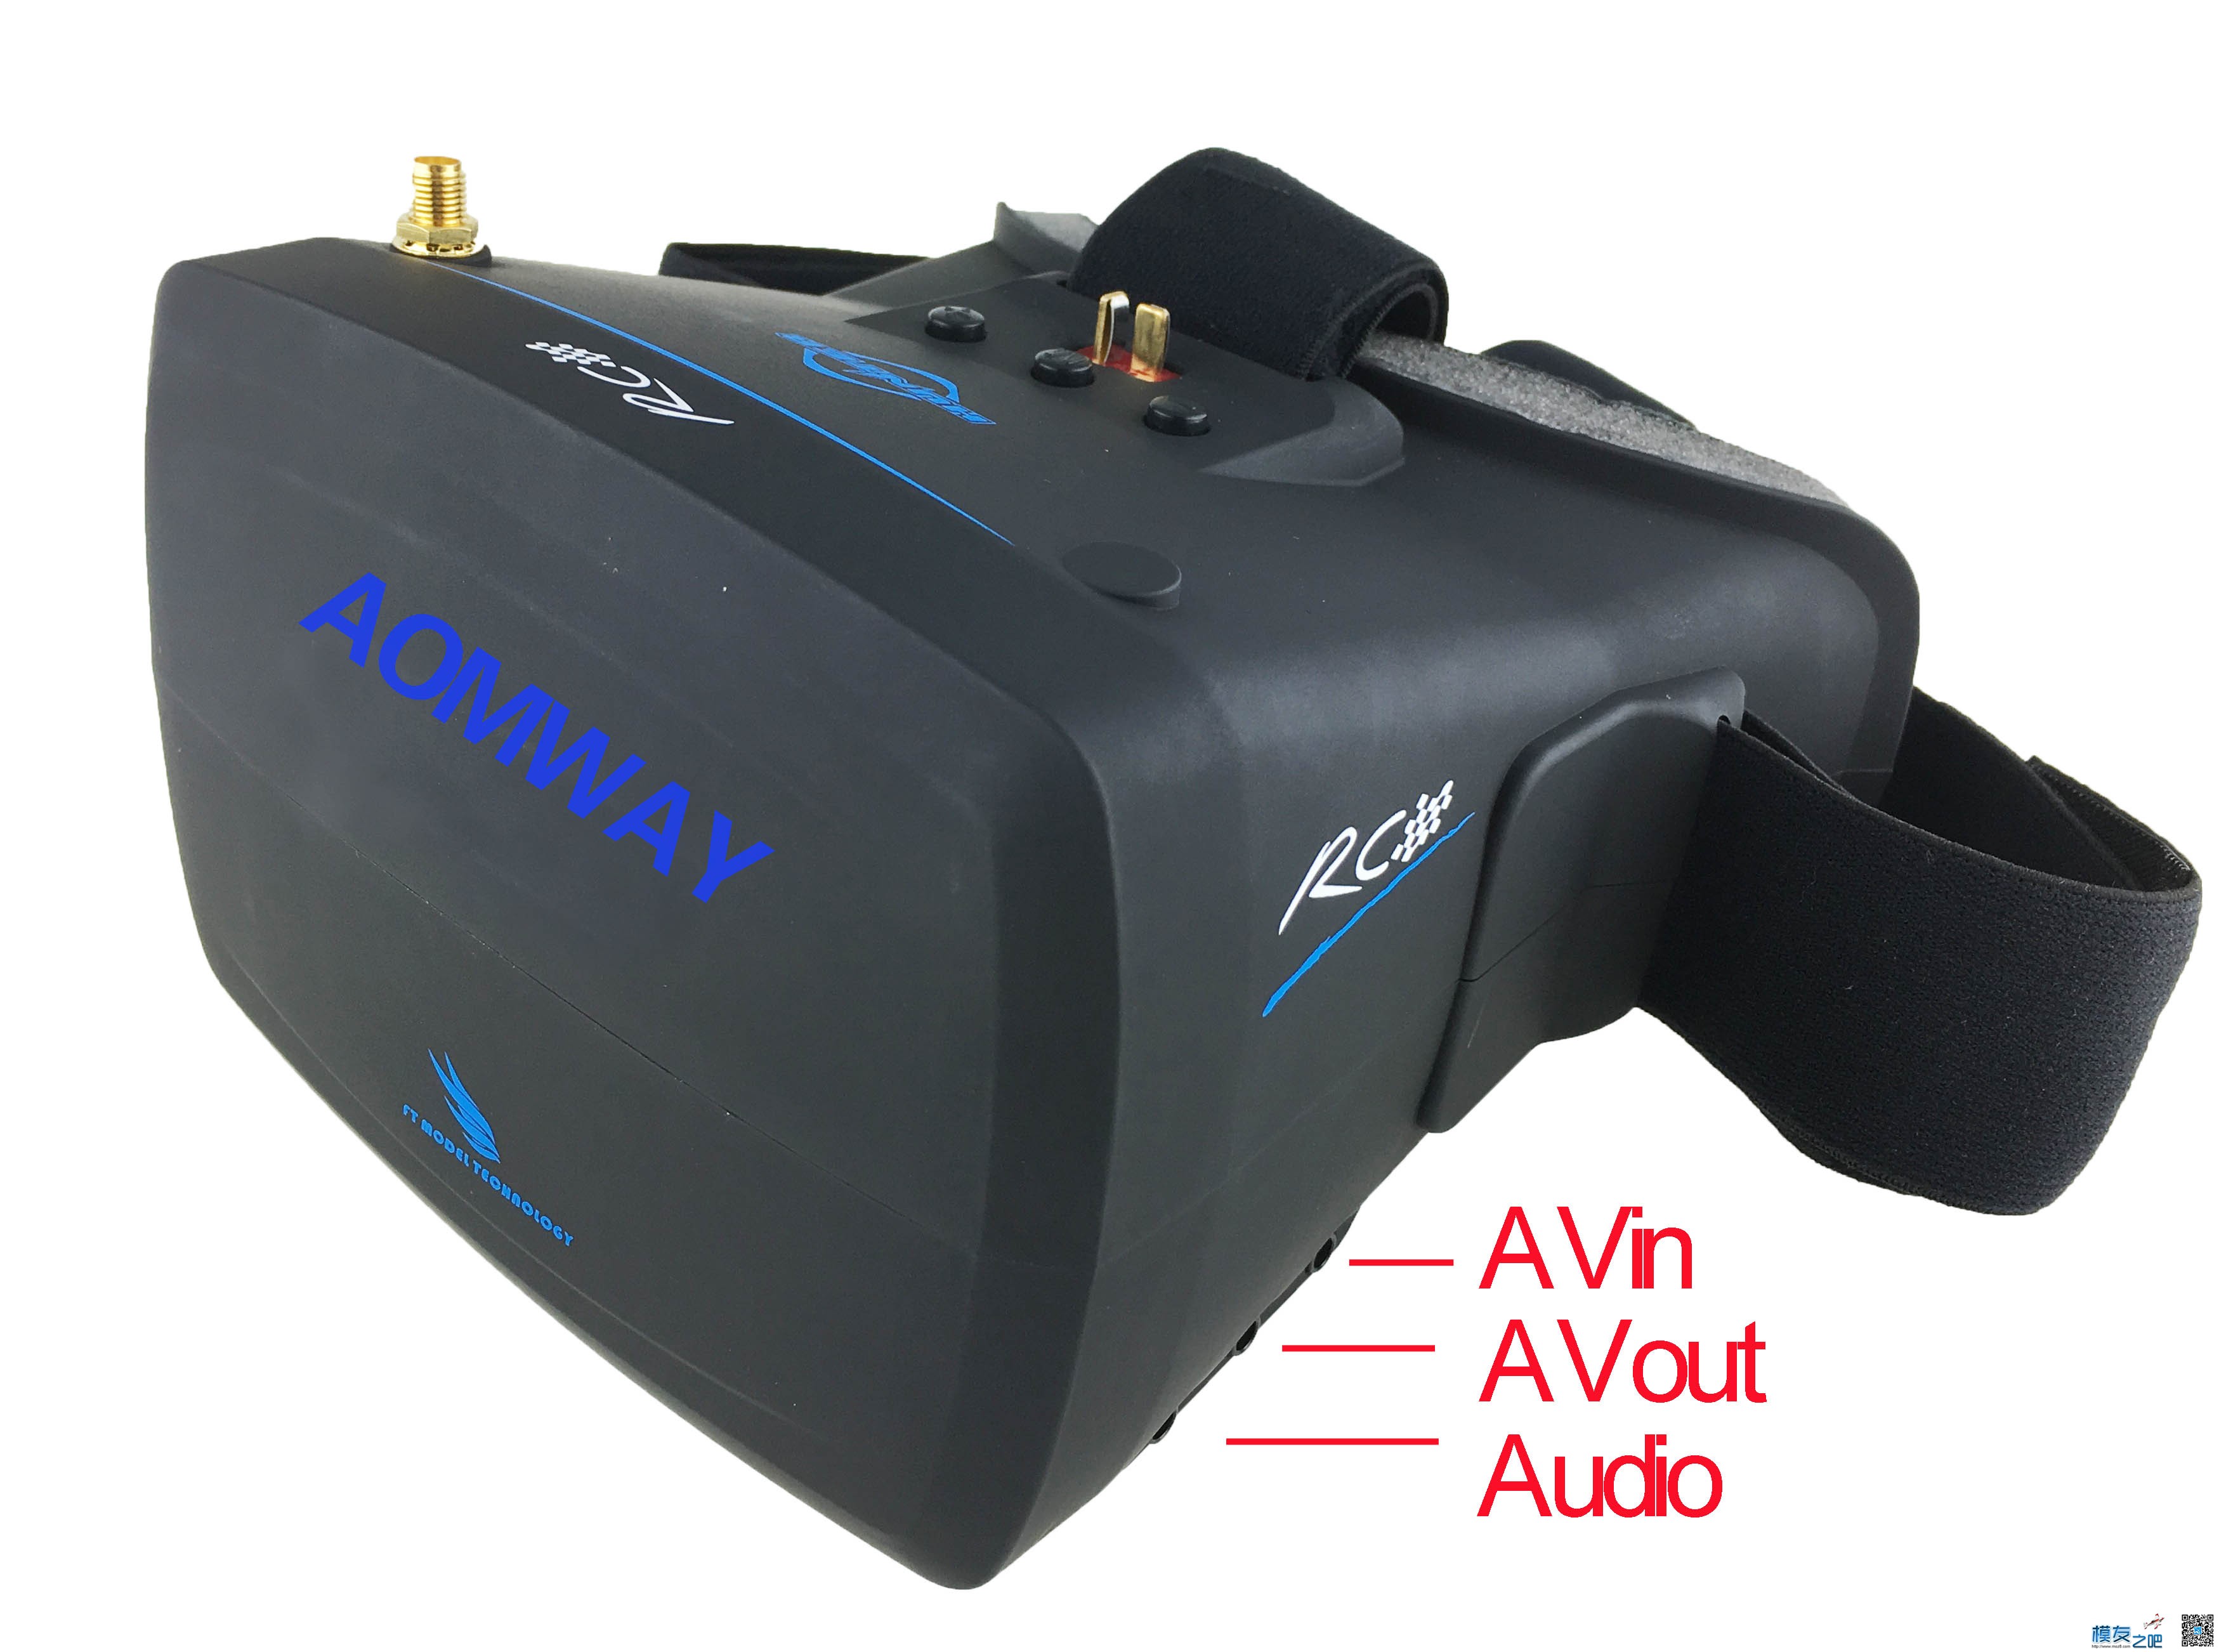 【模友之吧】AOMWAY VR Goggles V1 视频眼镜测试团购活动！ 电池,天线,图传,接收机,论坛活动 作者:飞天狼 7759 